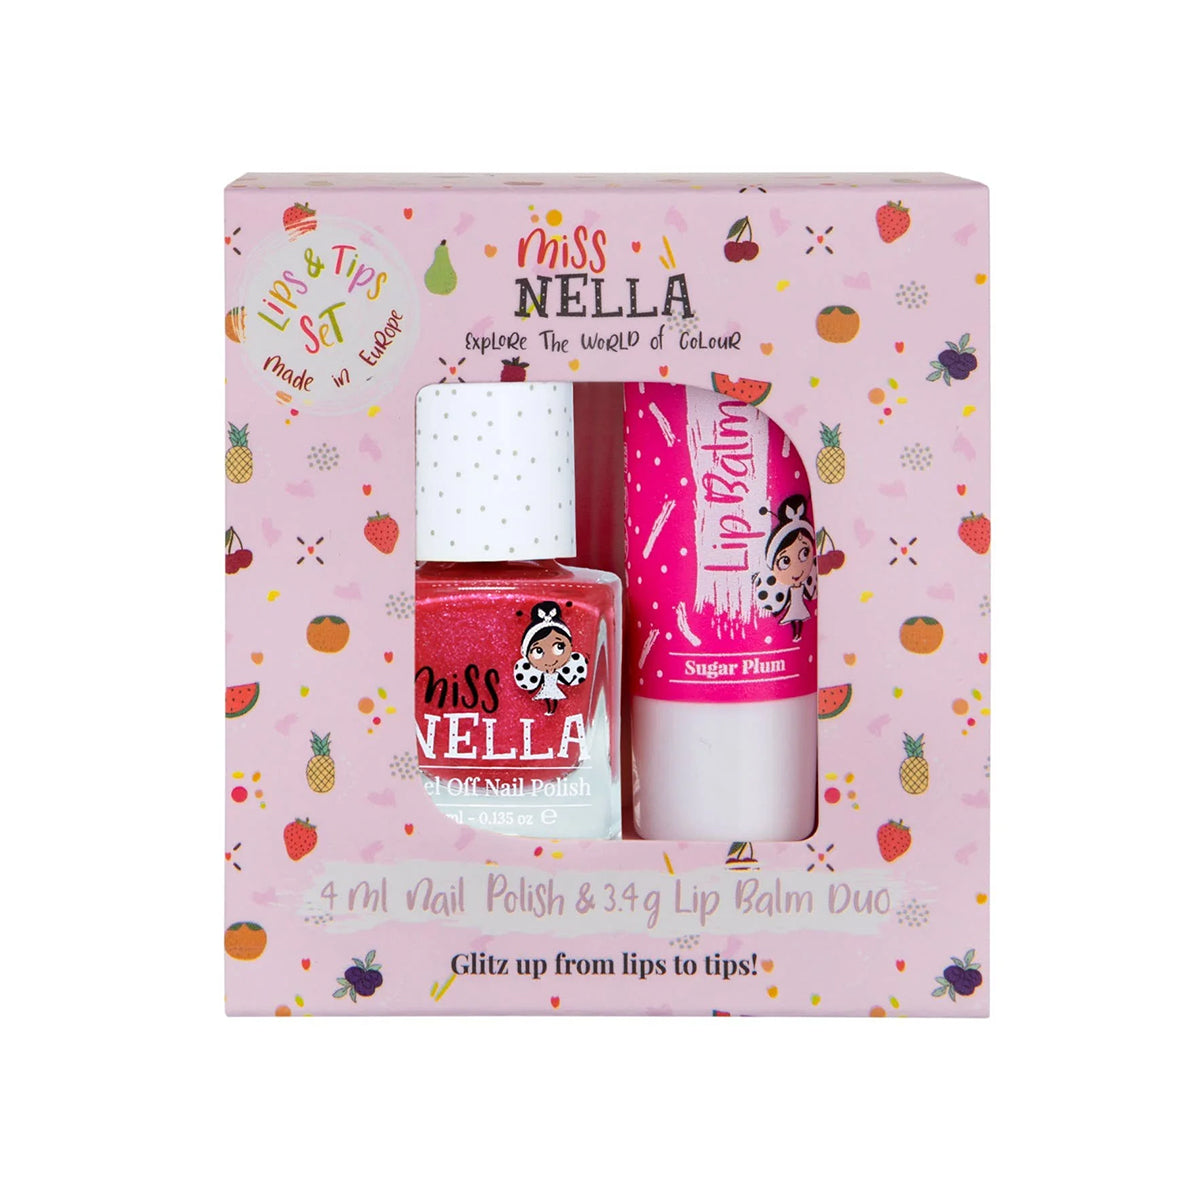 Miss Nella duo pack tickle me pink nagellak en lipbalm sugar plum is een echte musthave voor jonge fashionista's. Peel off en vrij van chemicaliën. Laat jouw kindje stralen met kleurrijke nagels en mooie lippen. VanZus